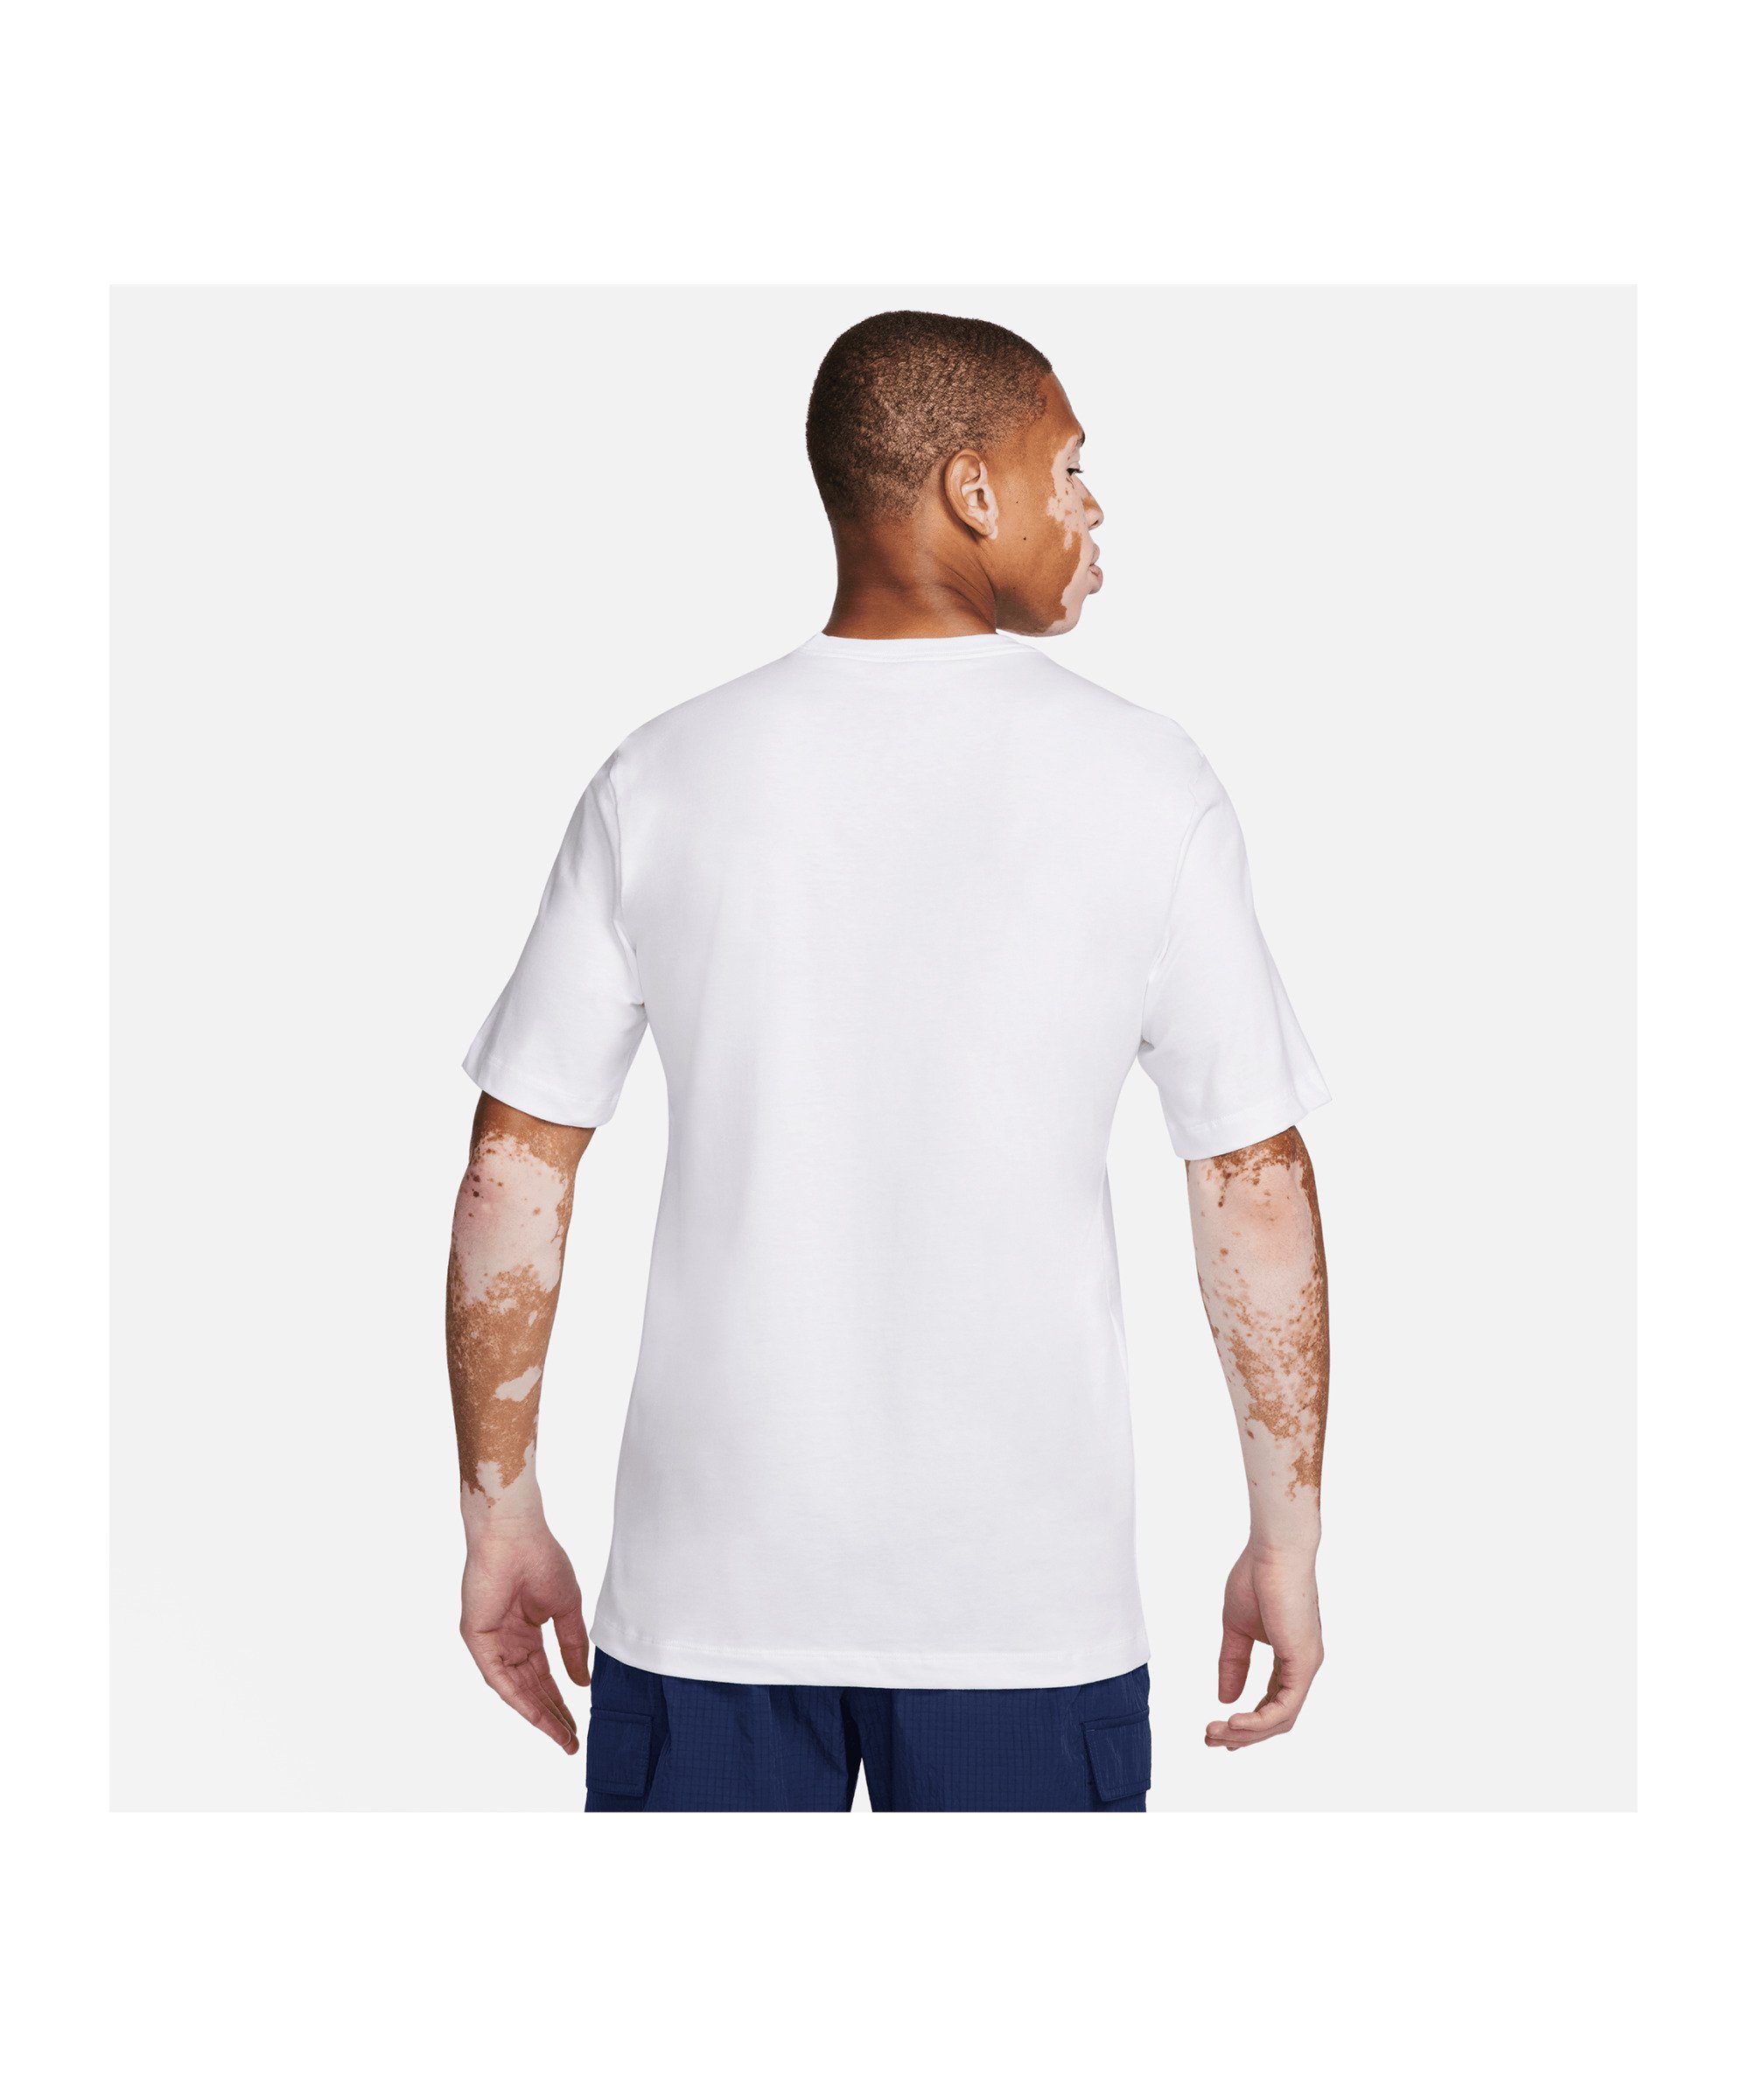 Nike weiss default T-Shirt T-Shirt